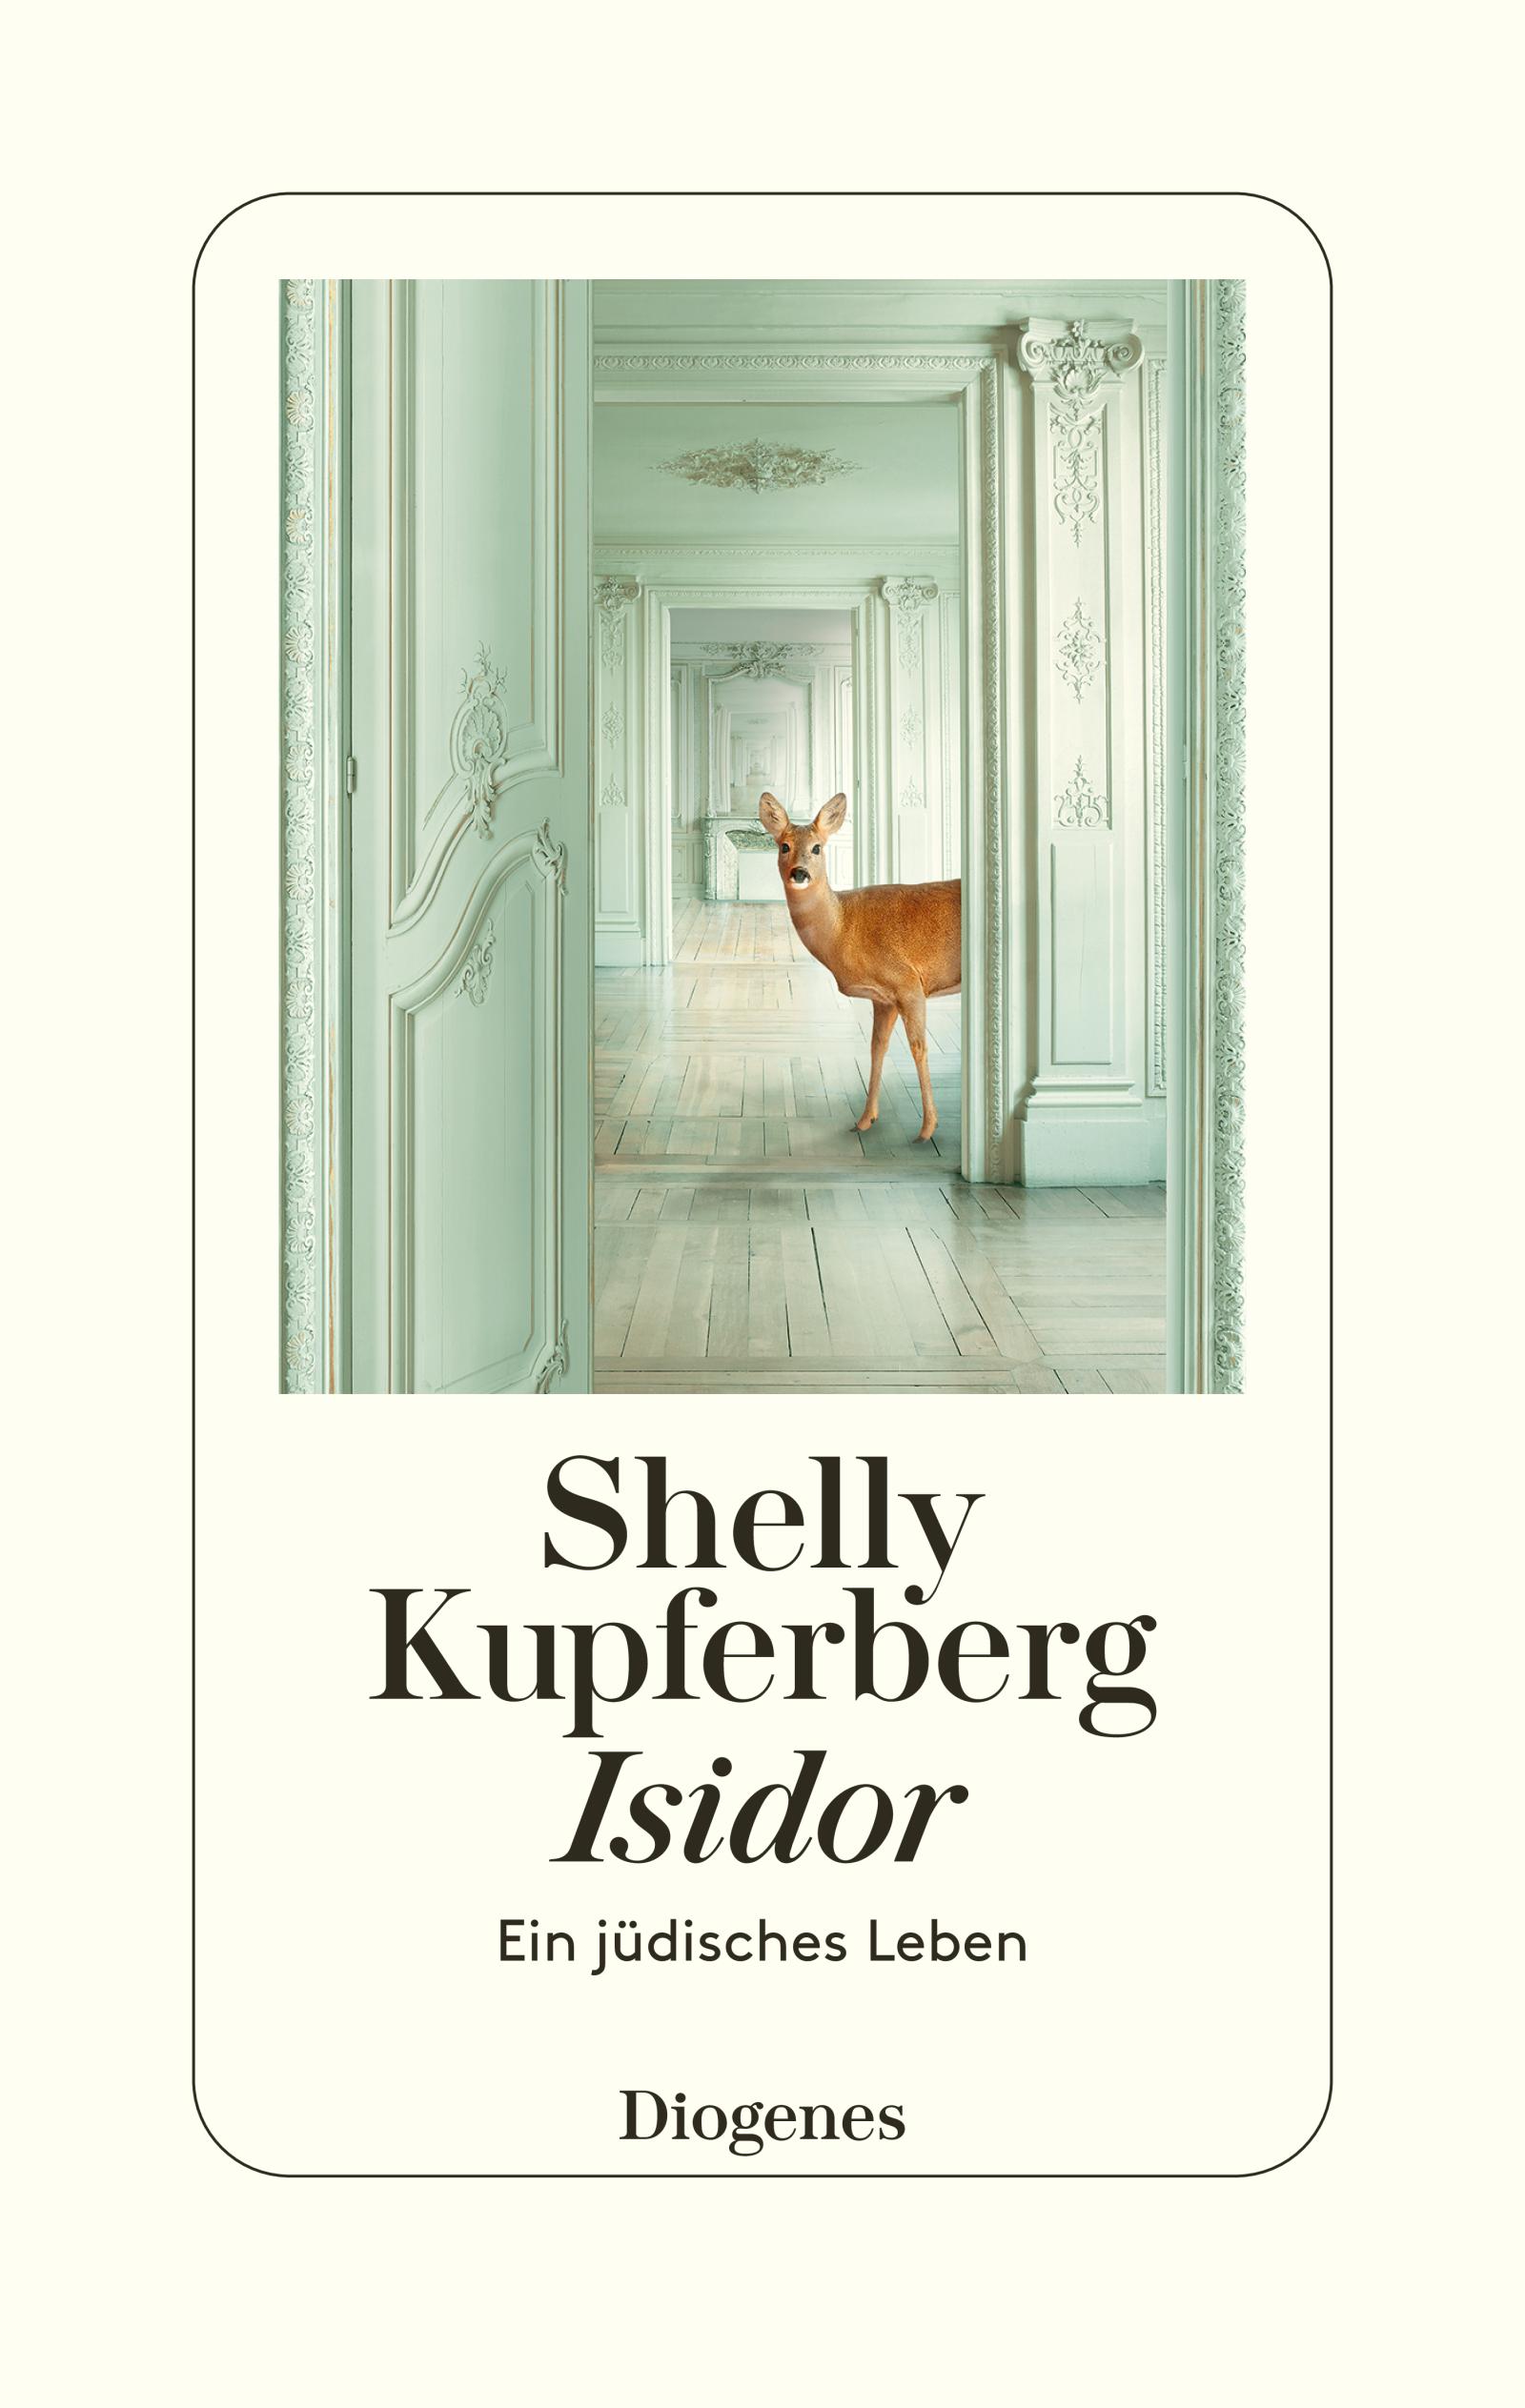  Shelly Kupferberg. Isidor, Ein jüdisches Leben